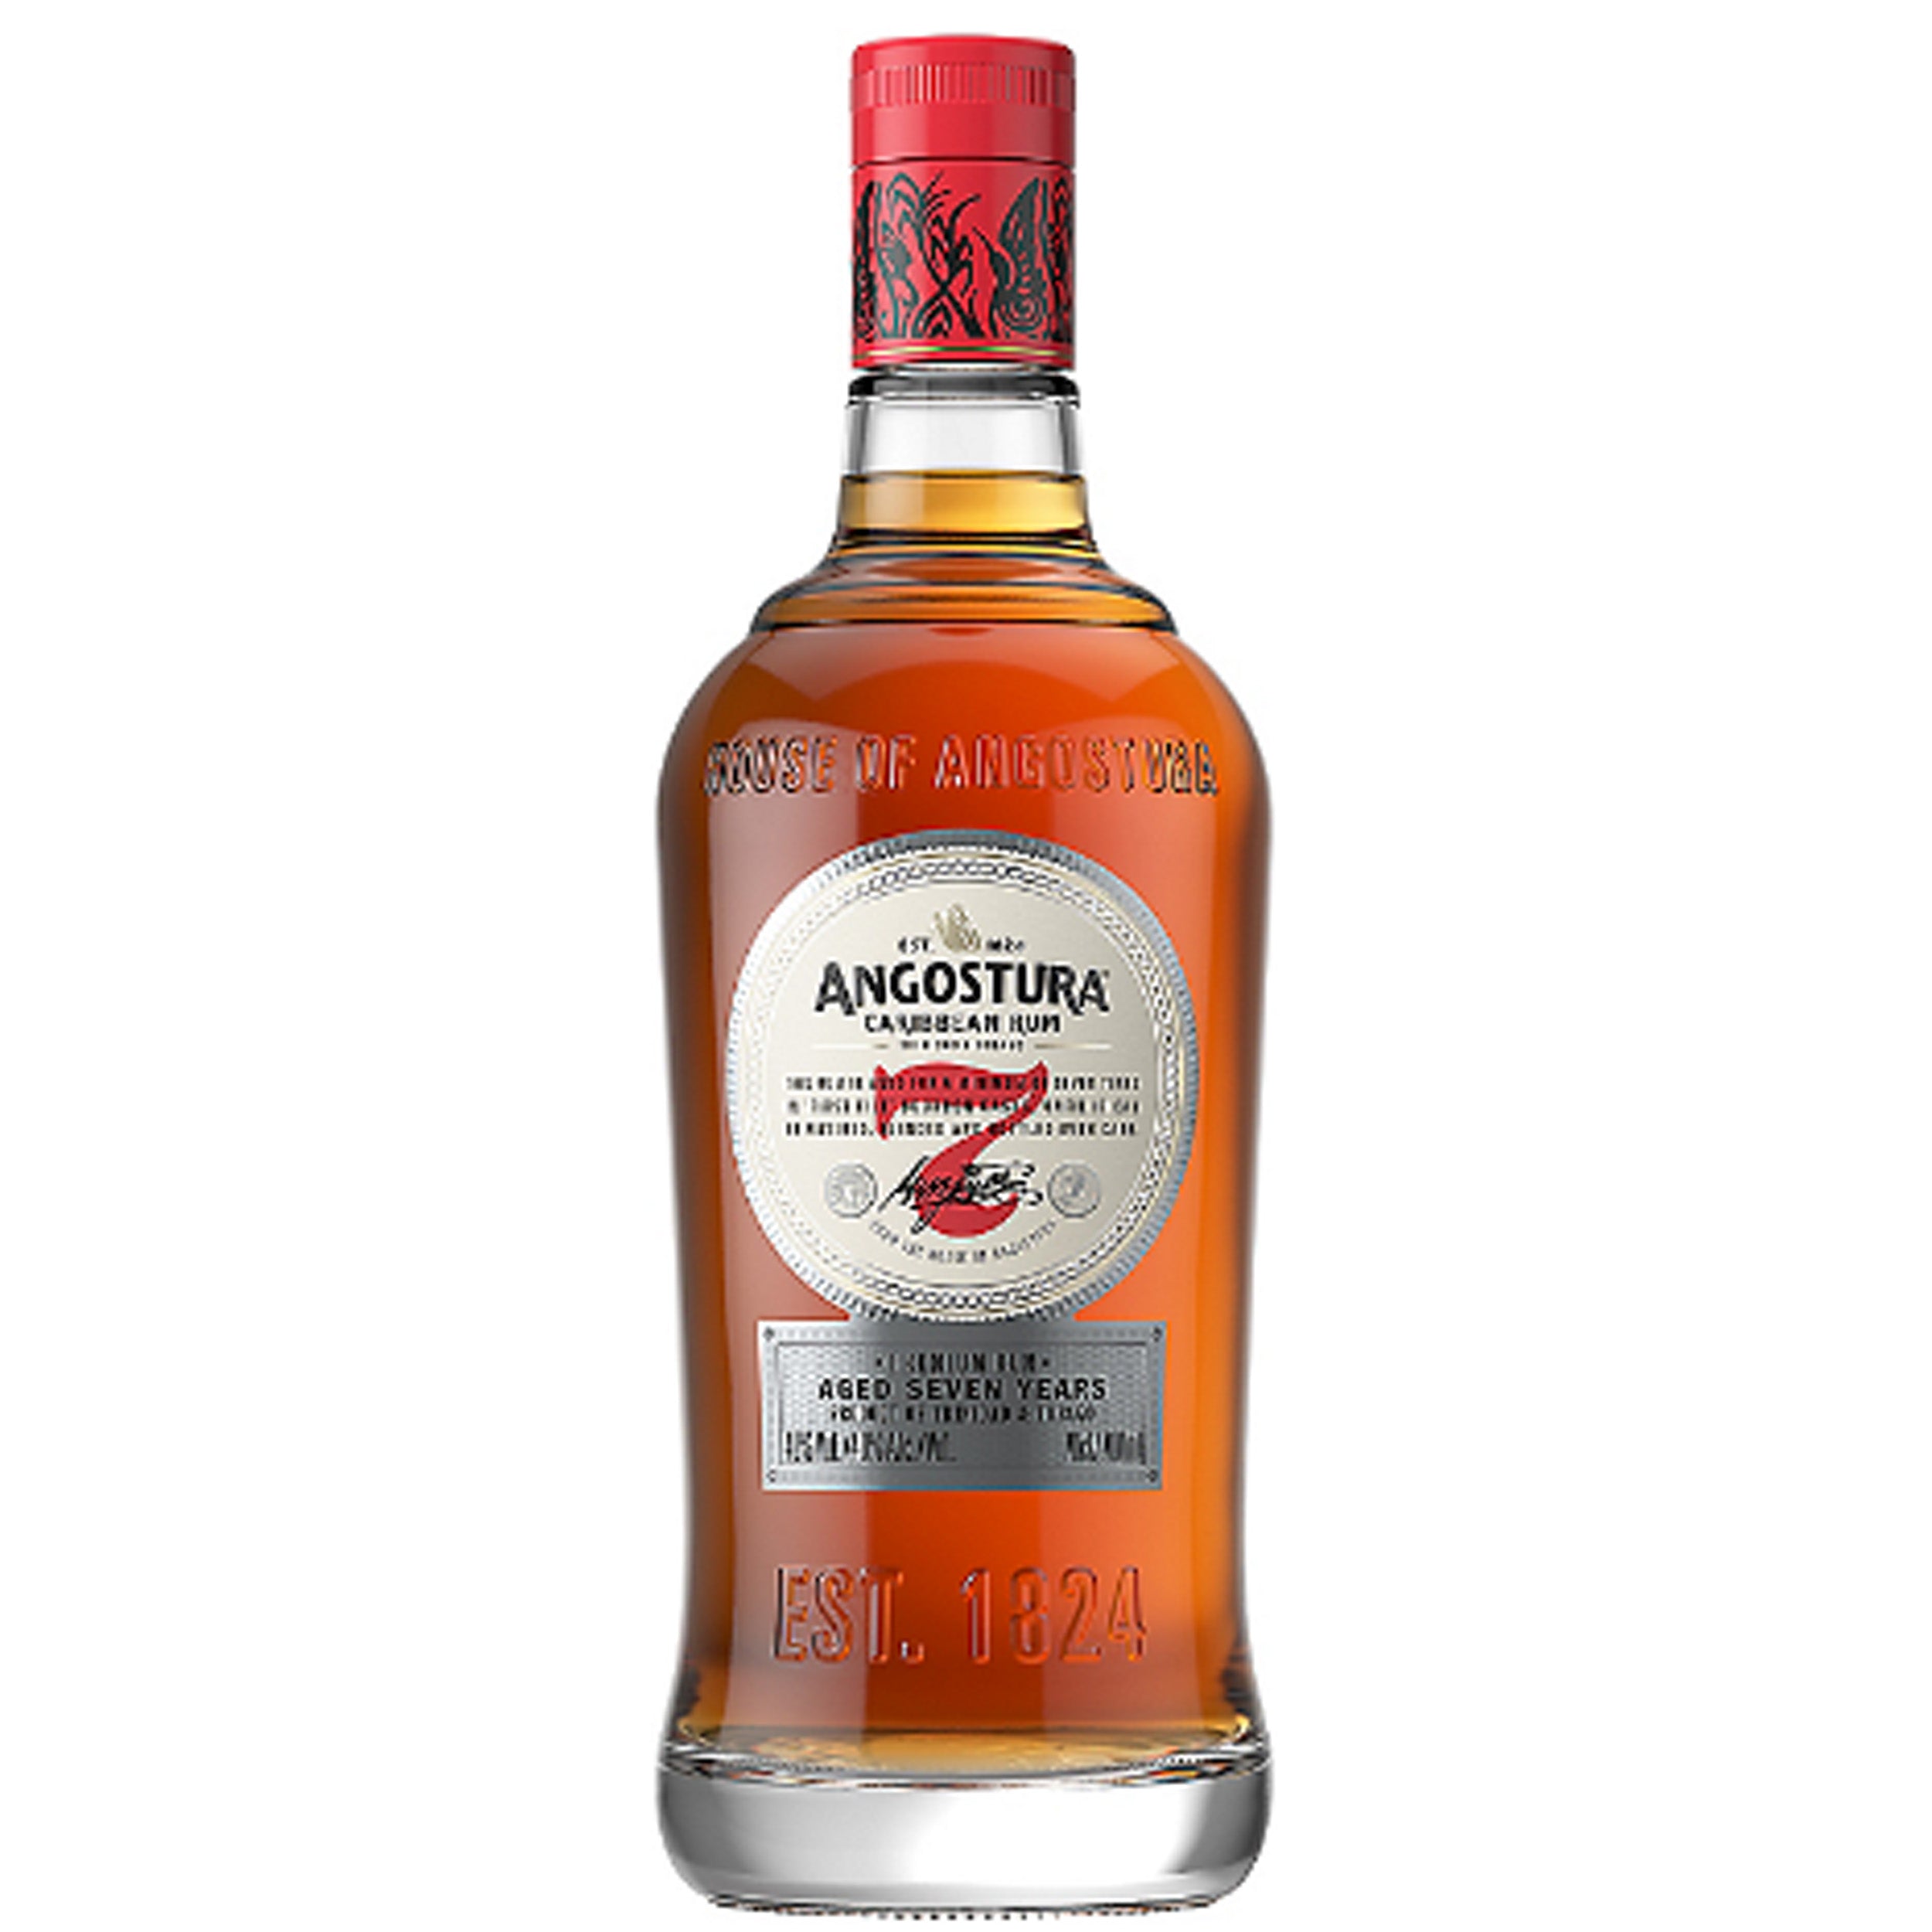 Angostura Aged 7 Year Rum